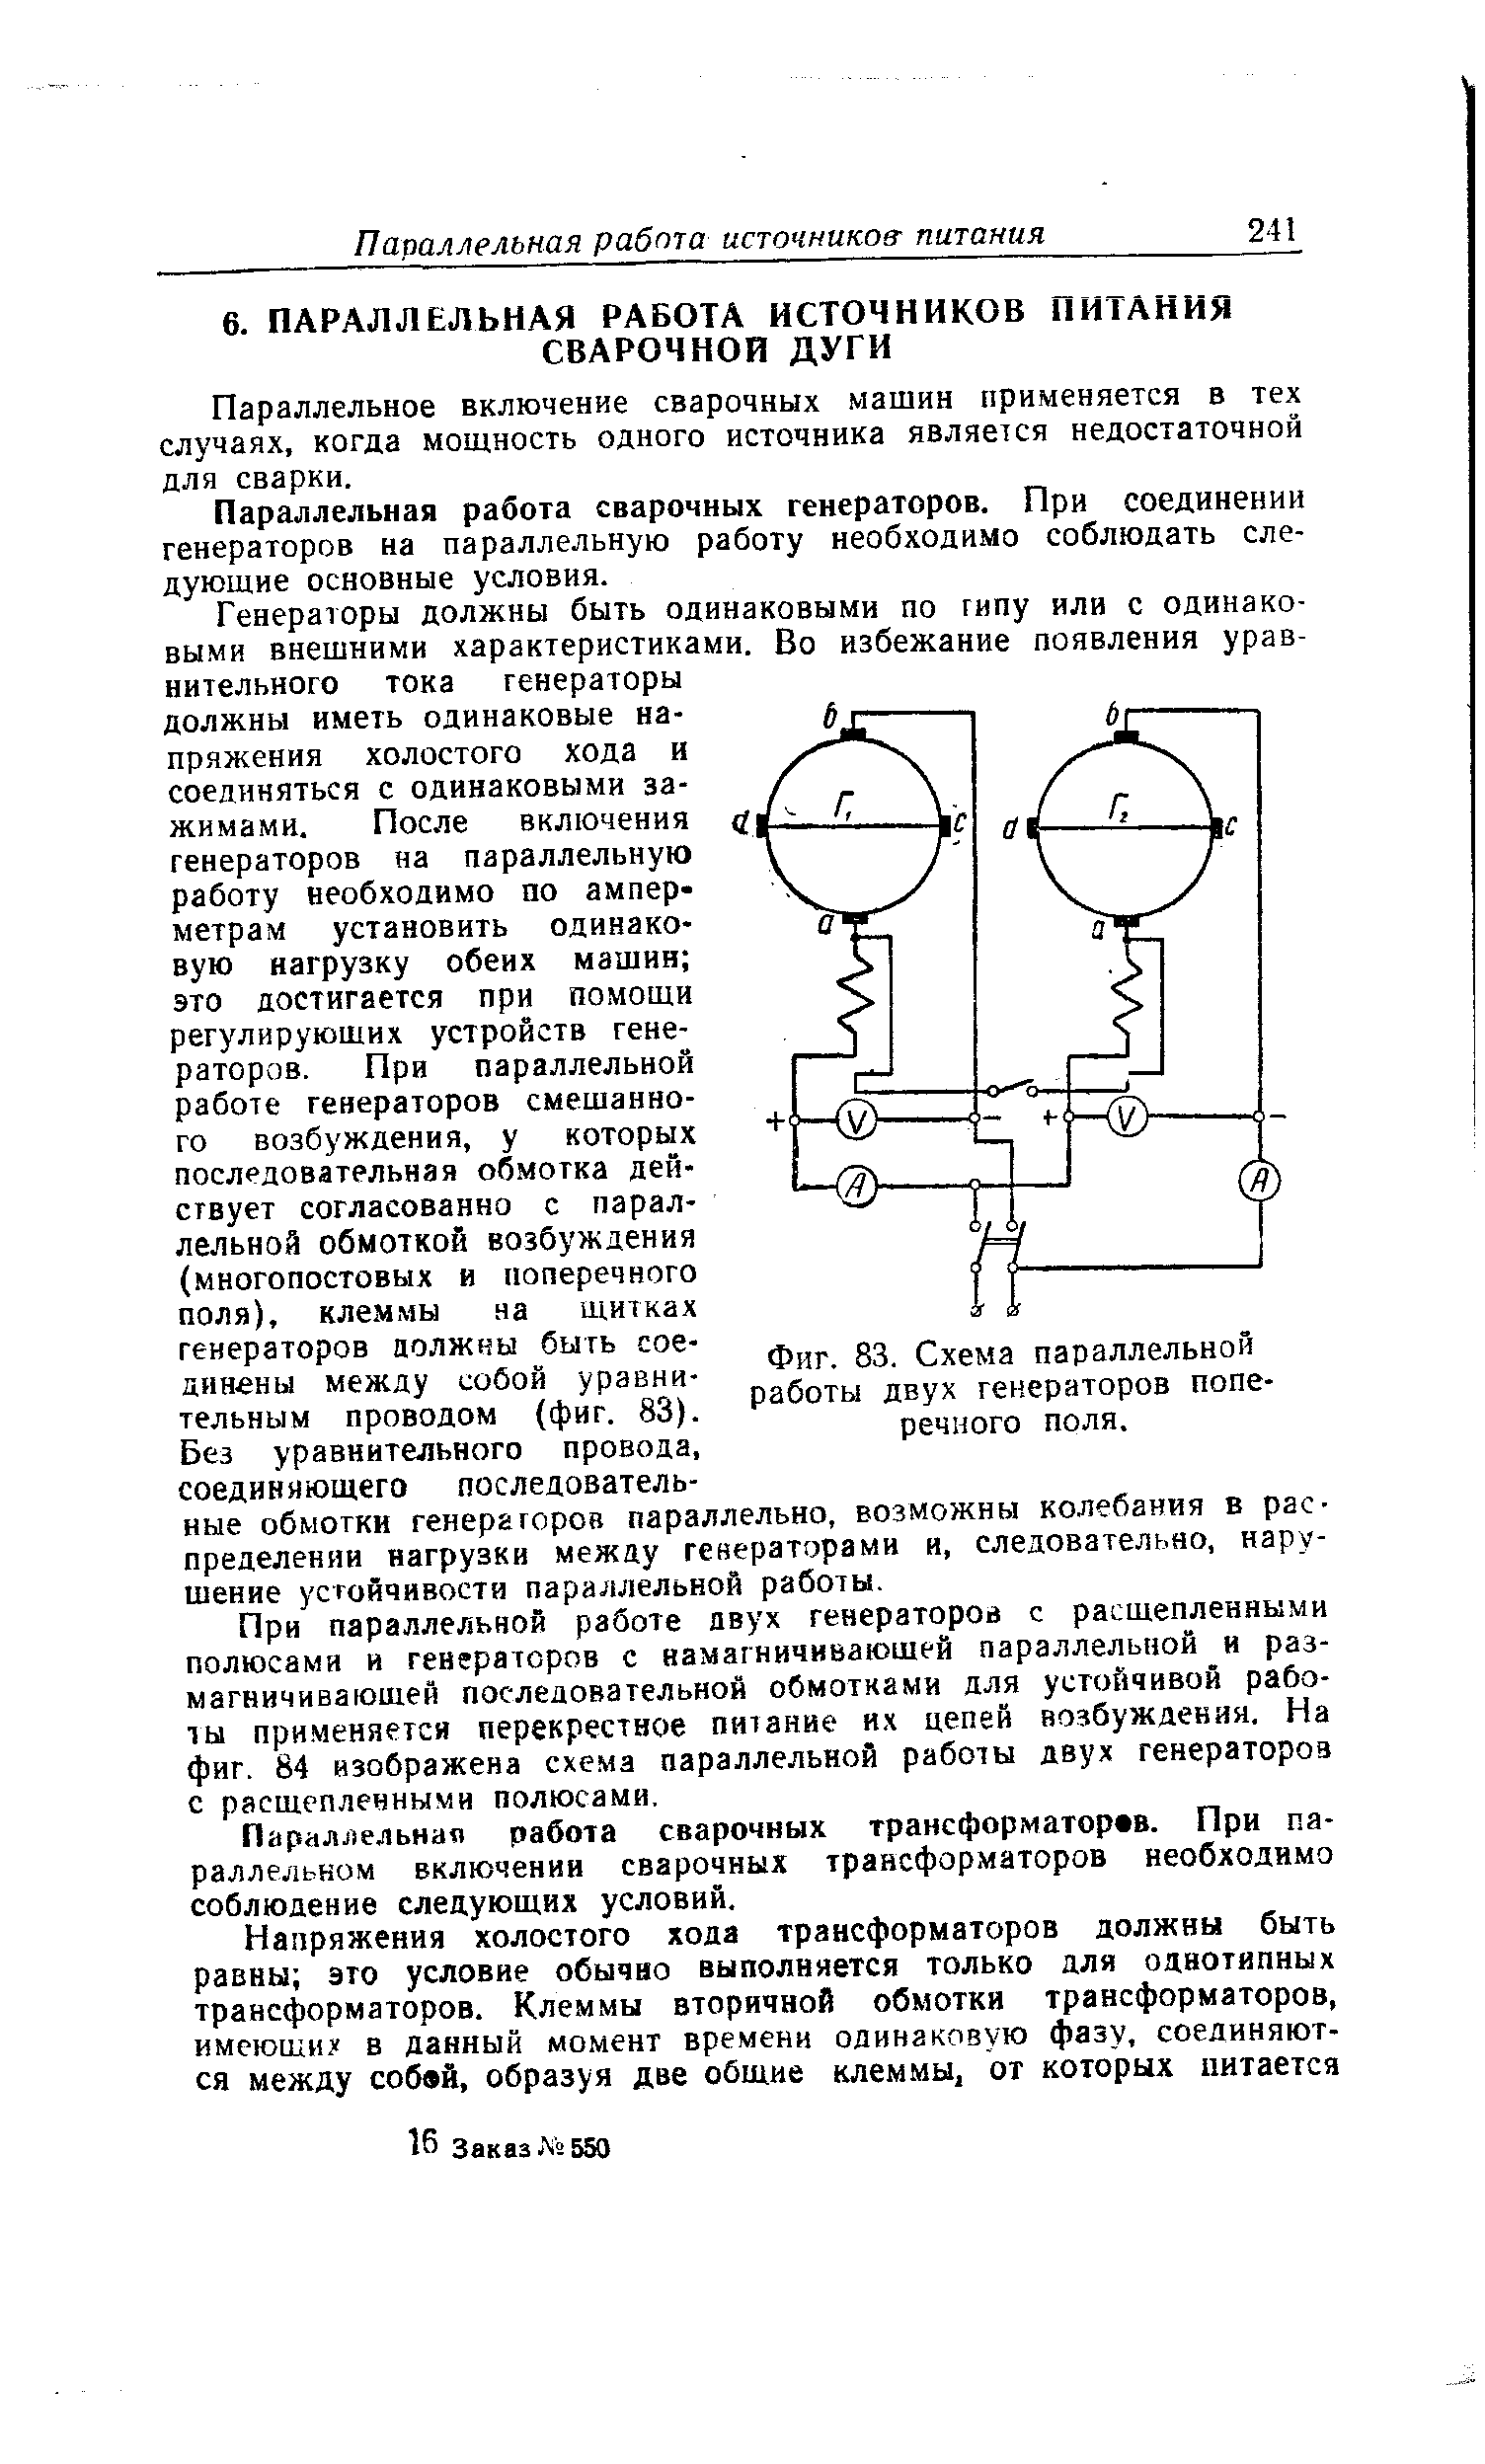 Фиг. 83. Схема параллельной работы двух генераторов поперечного поля.
